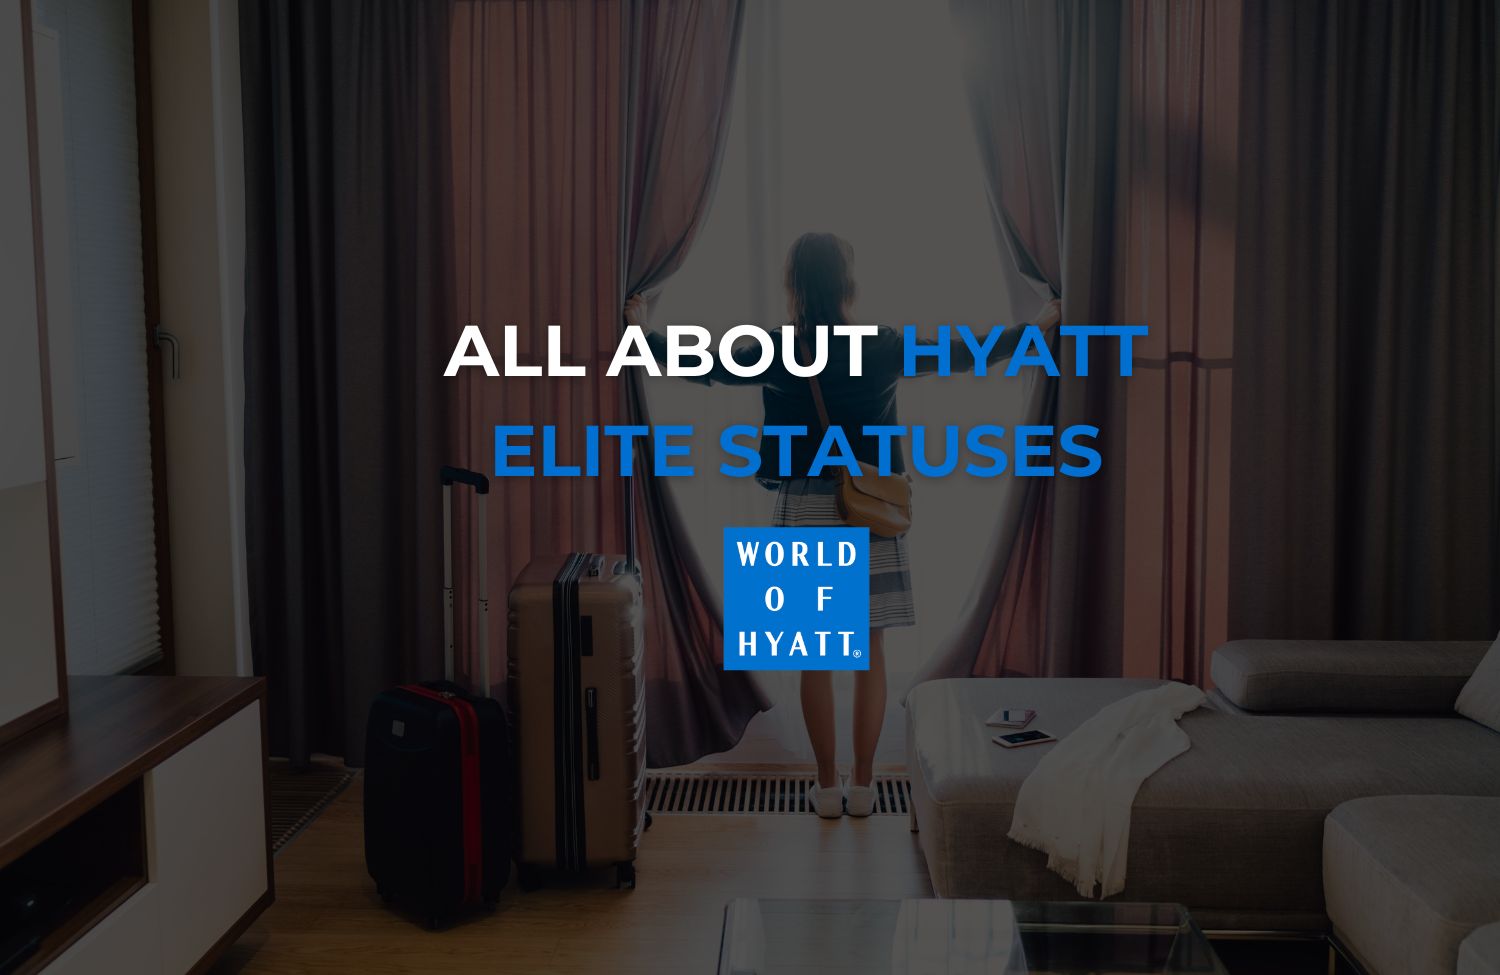 All About Hyatt Elite Statuses